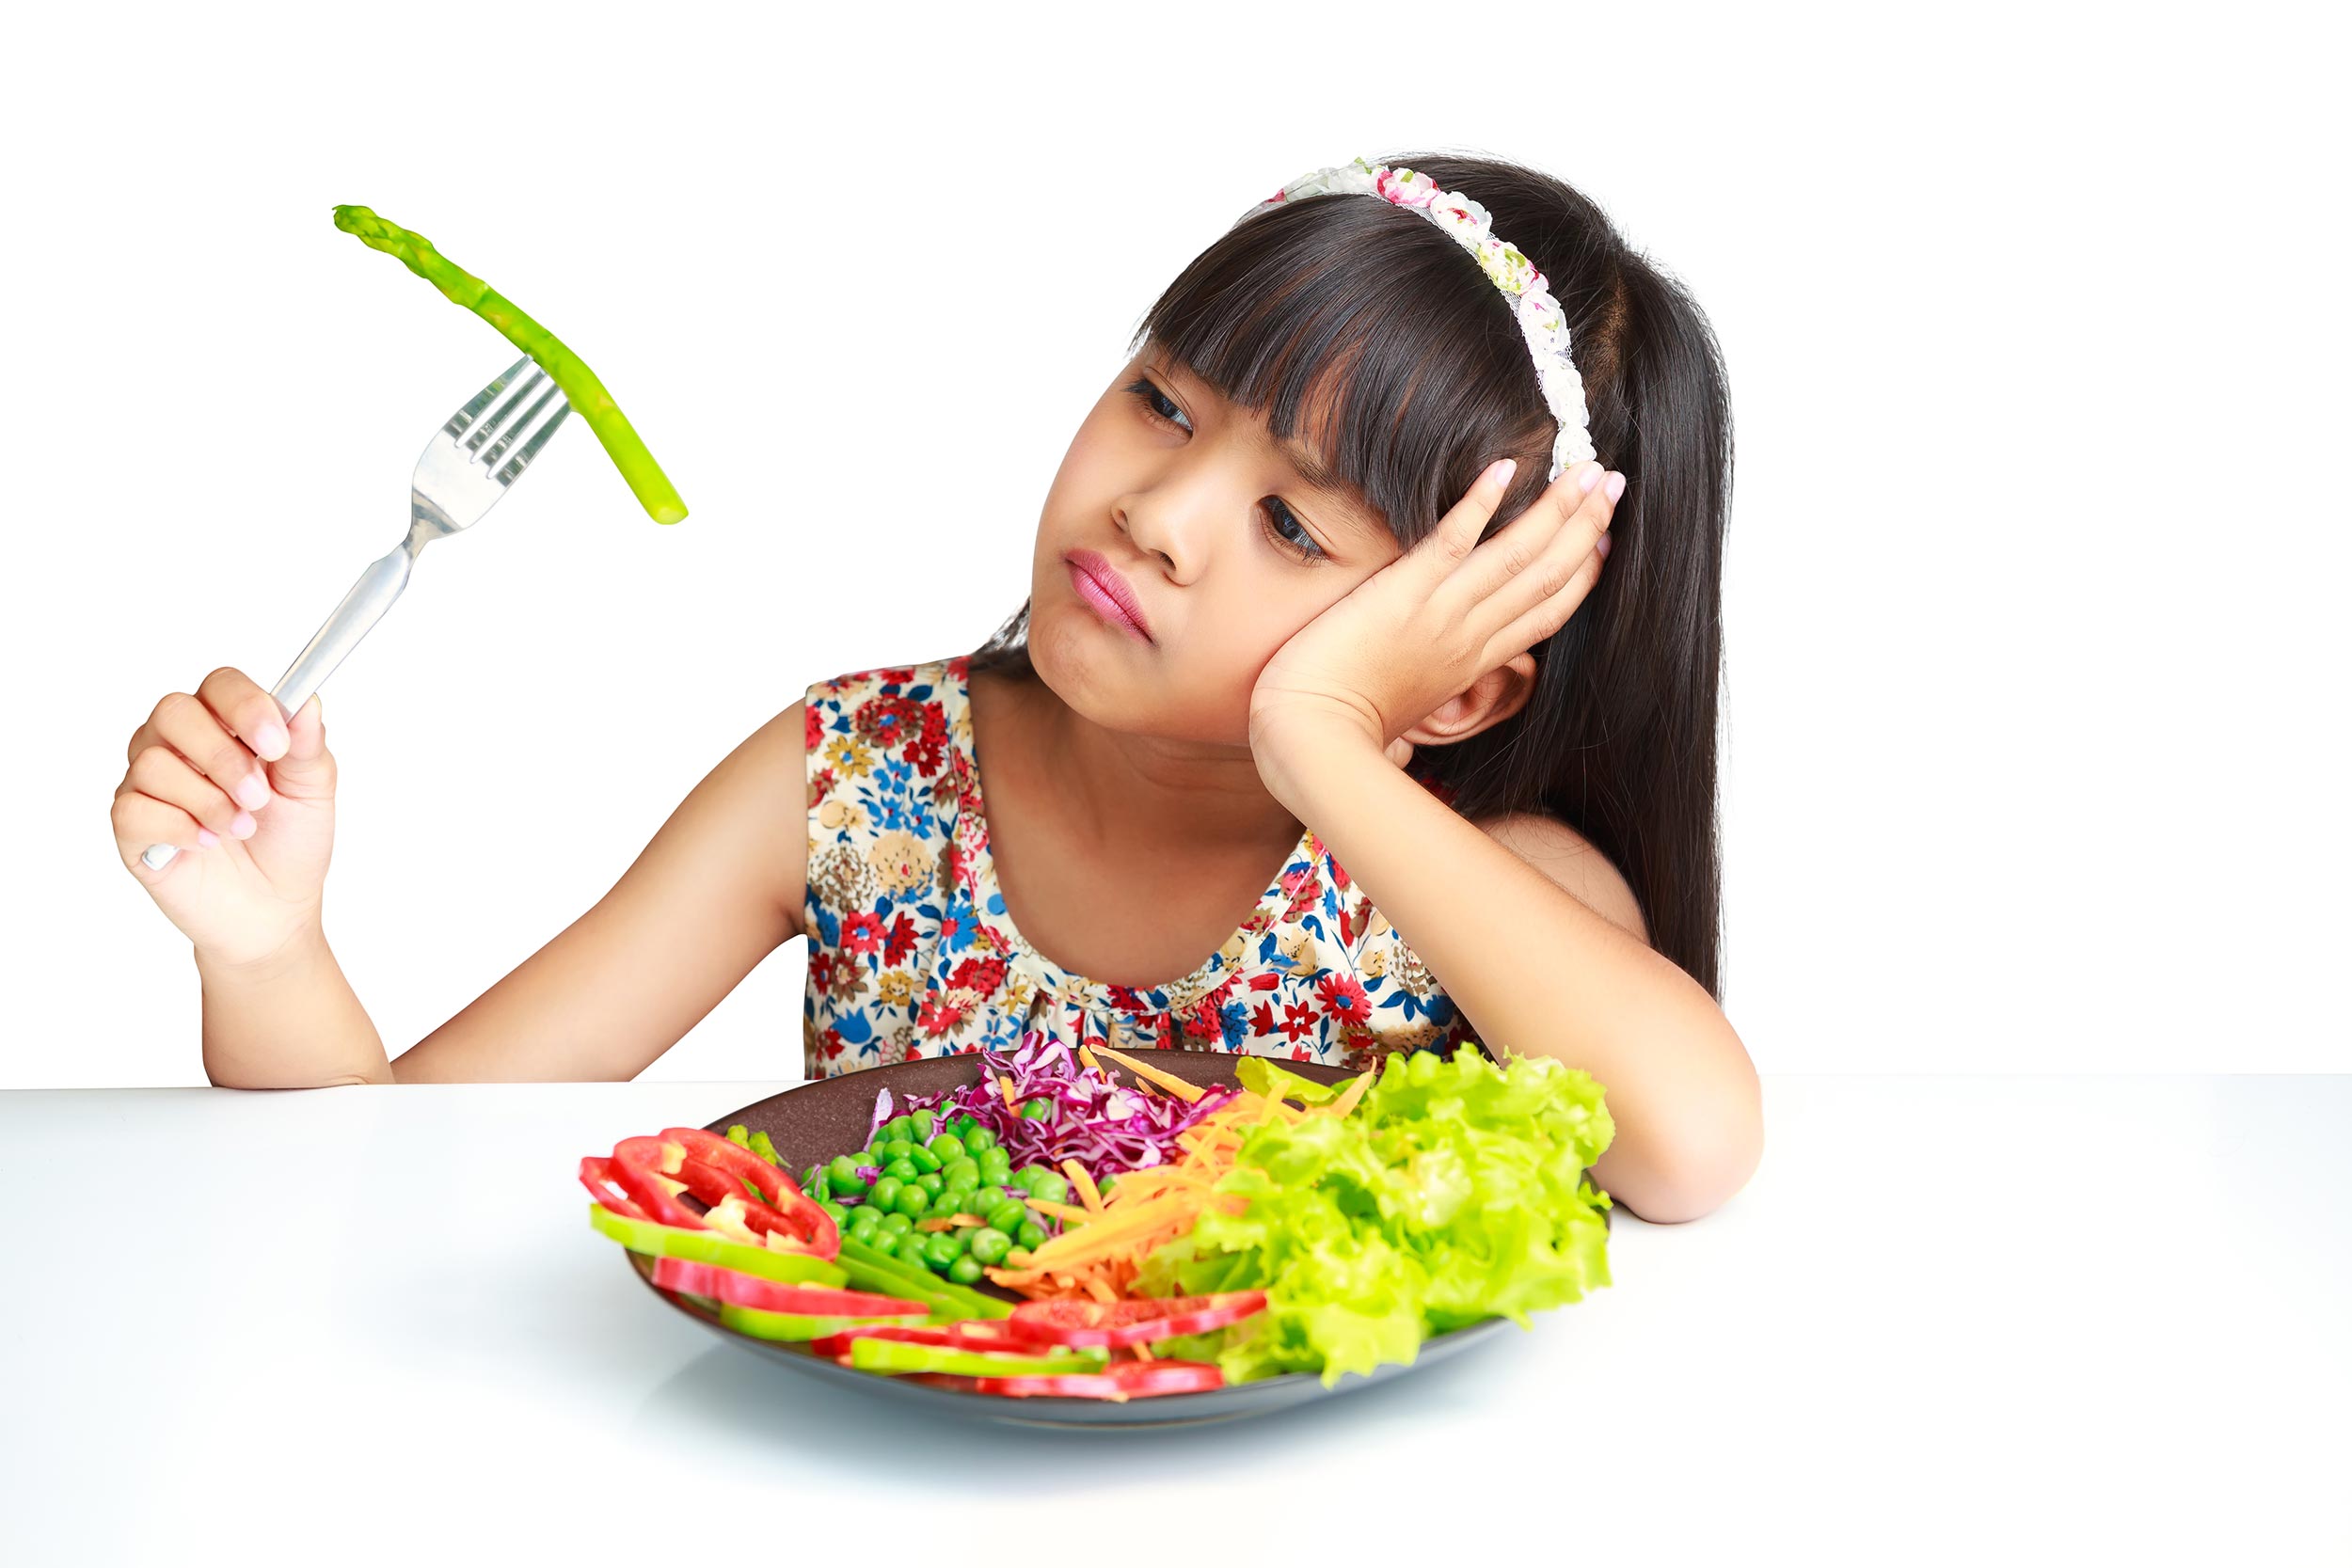 Anak susah makan sayur juga bisa disebabkan karena tampilannya yang tidak menarik